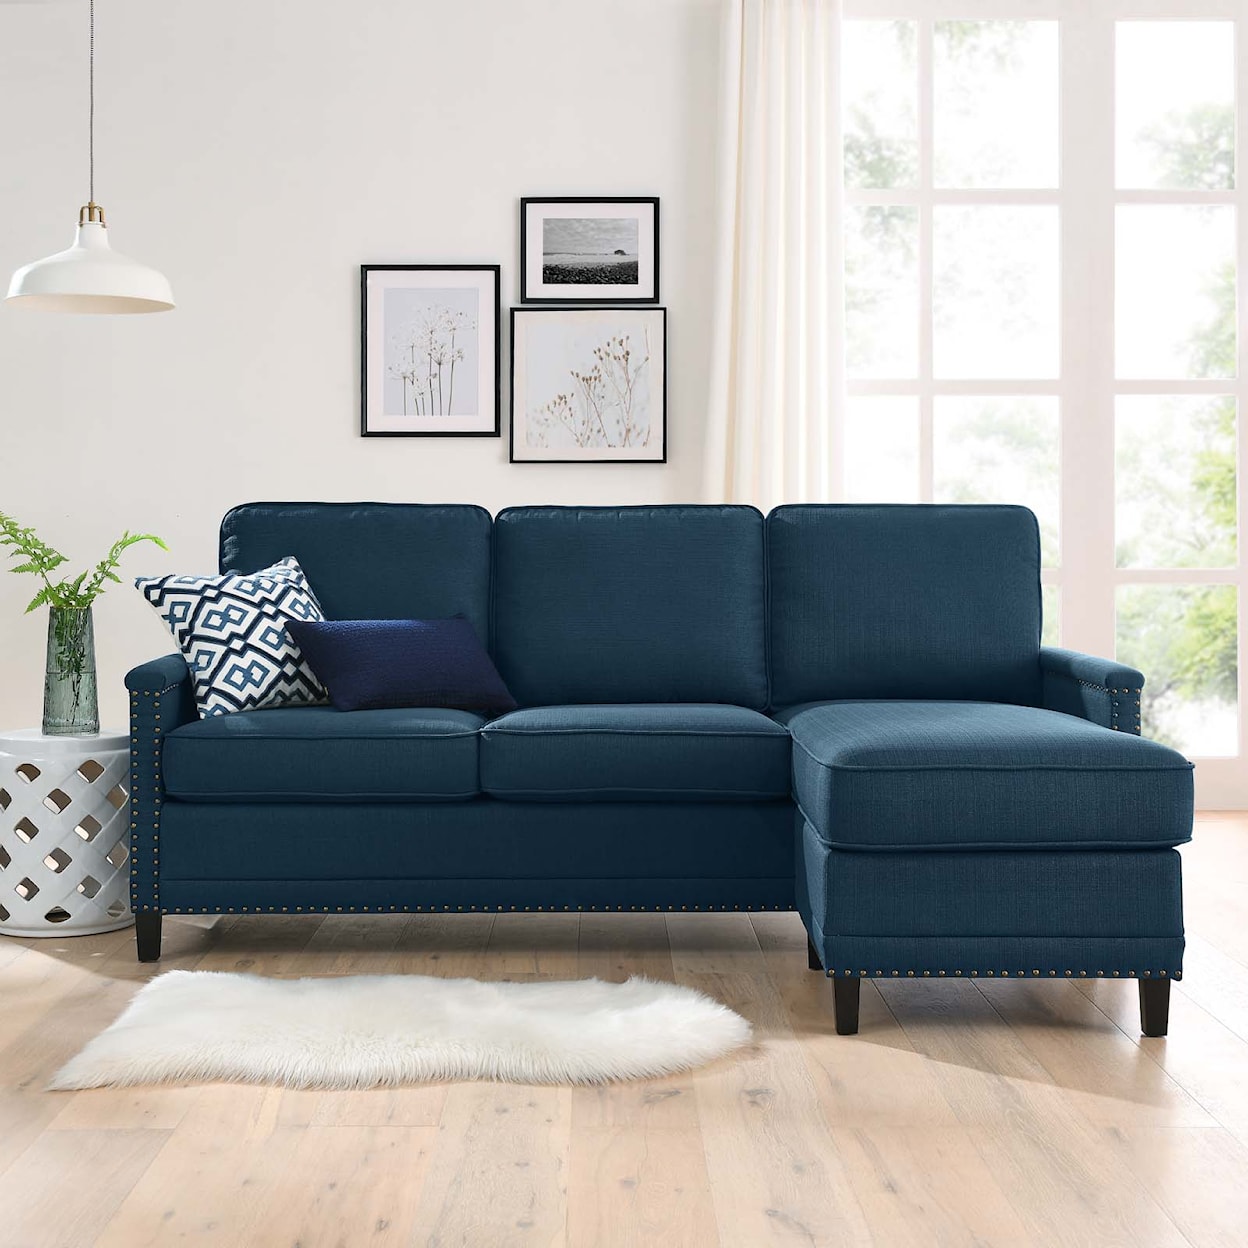 Modway Ashton Sectional Sofa